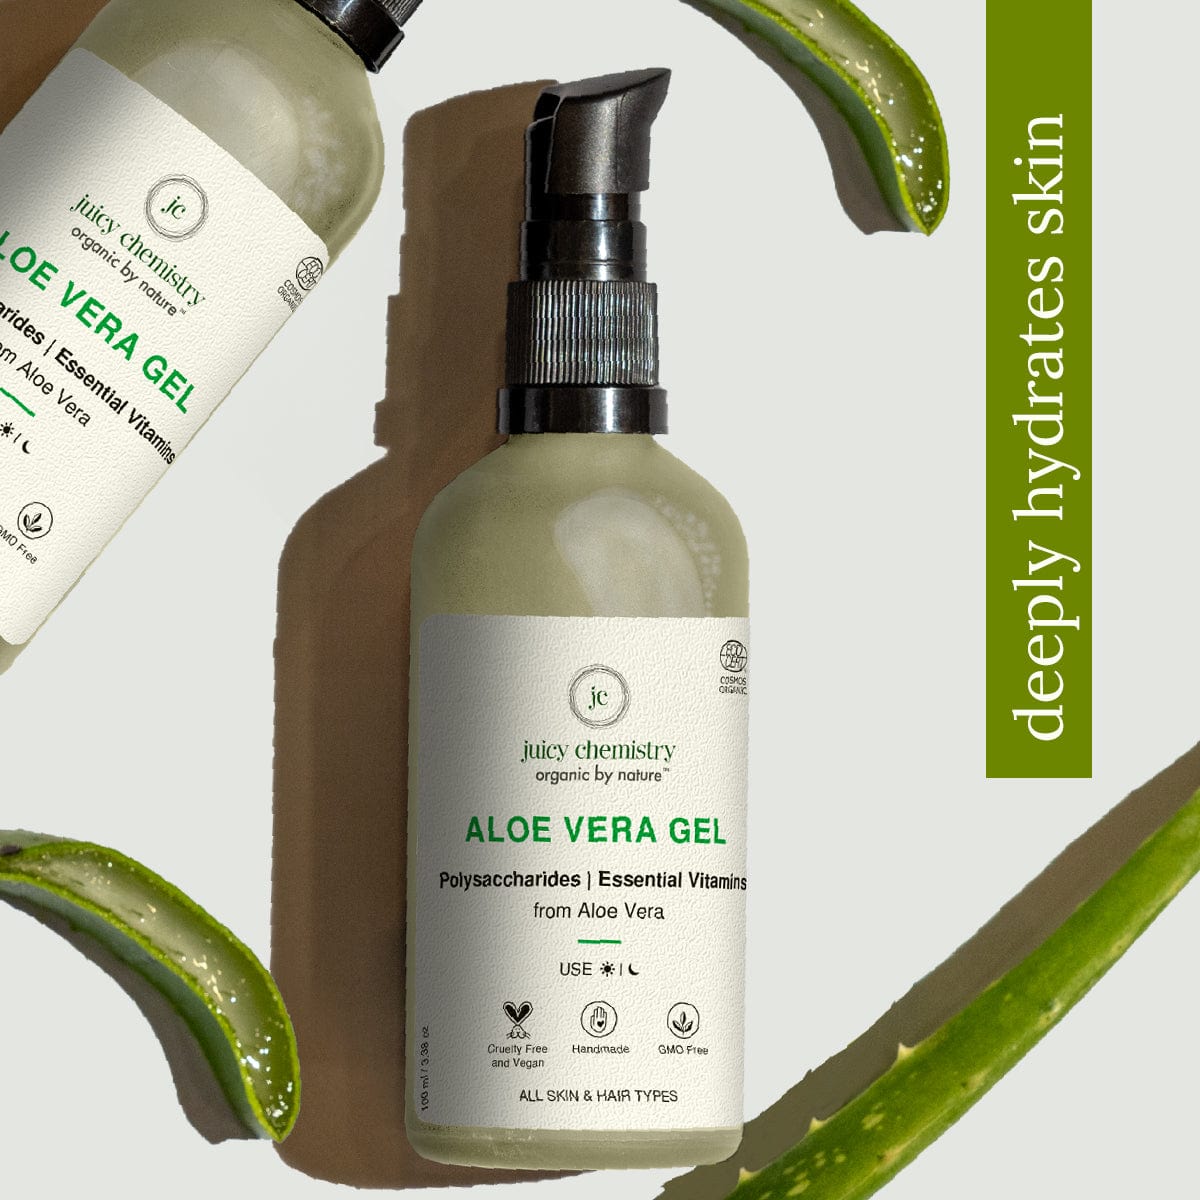 sø absurd mikroskopisk 100% Pure Natural Aloe Vera Gel for Face Skin, Hair and Scalp